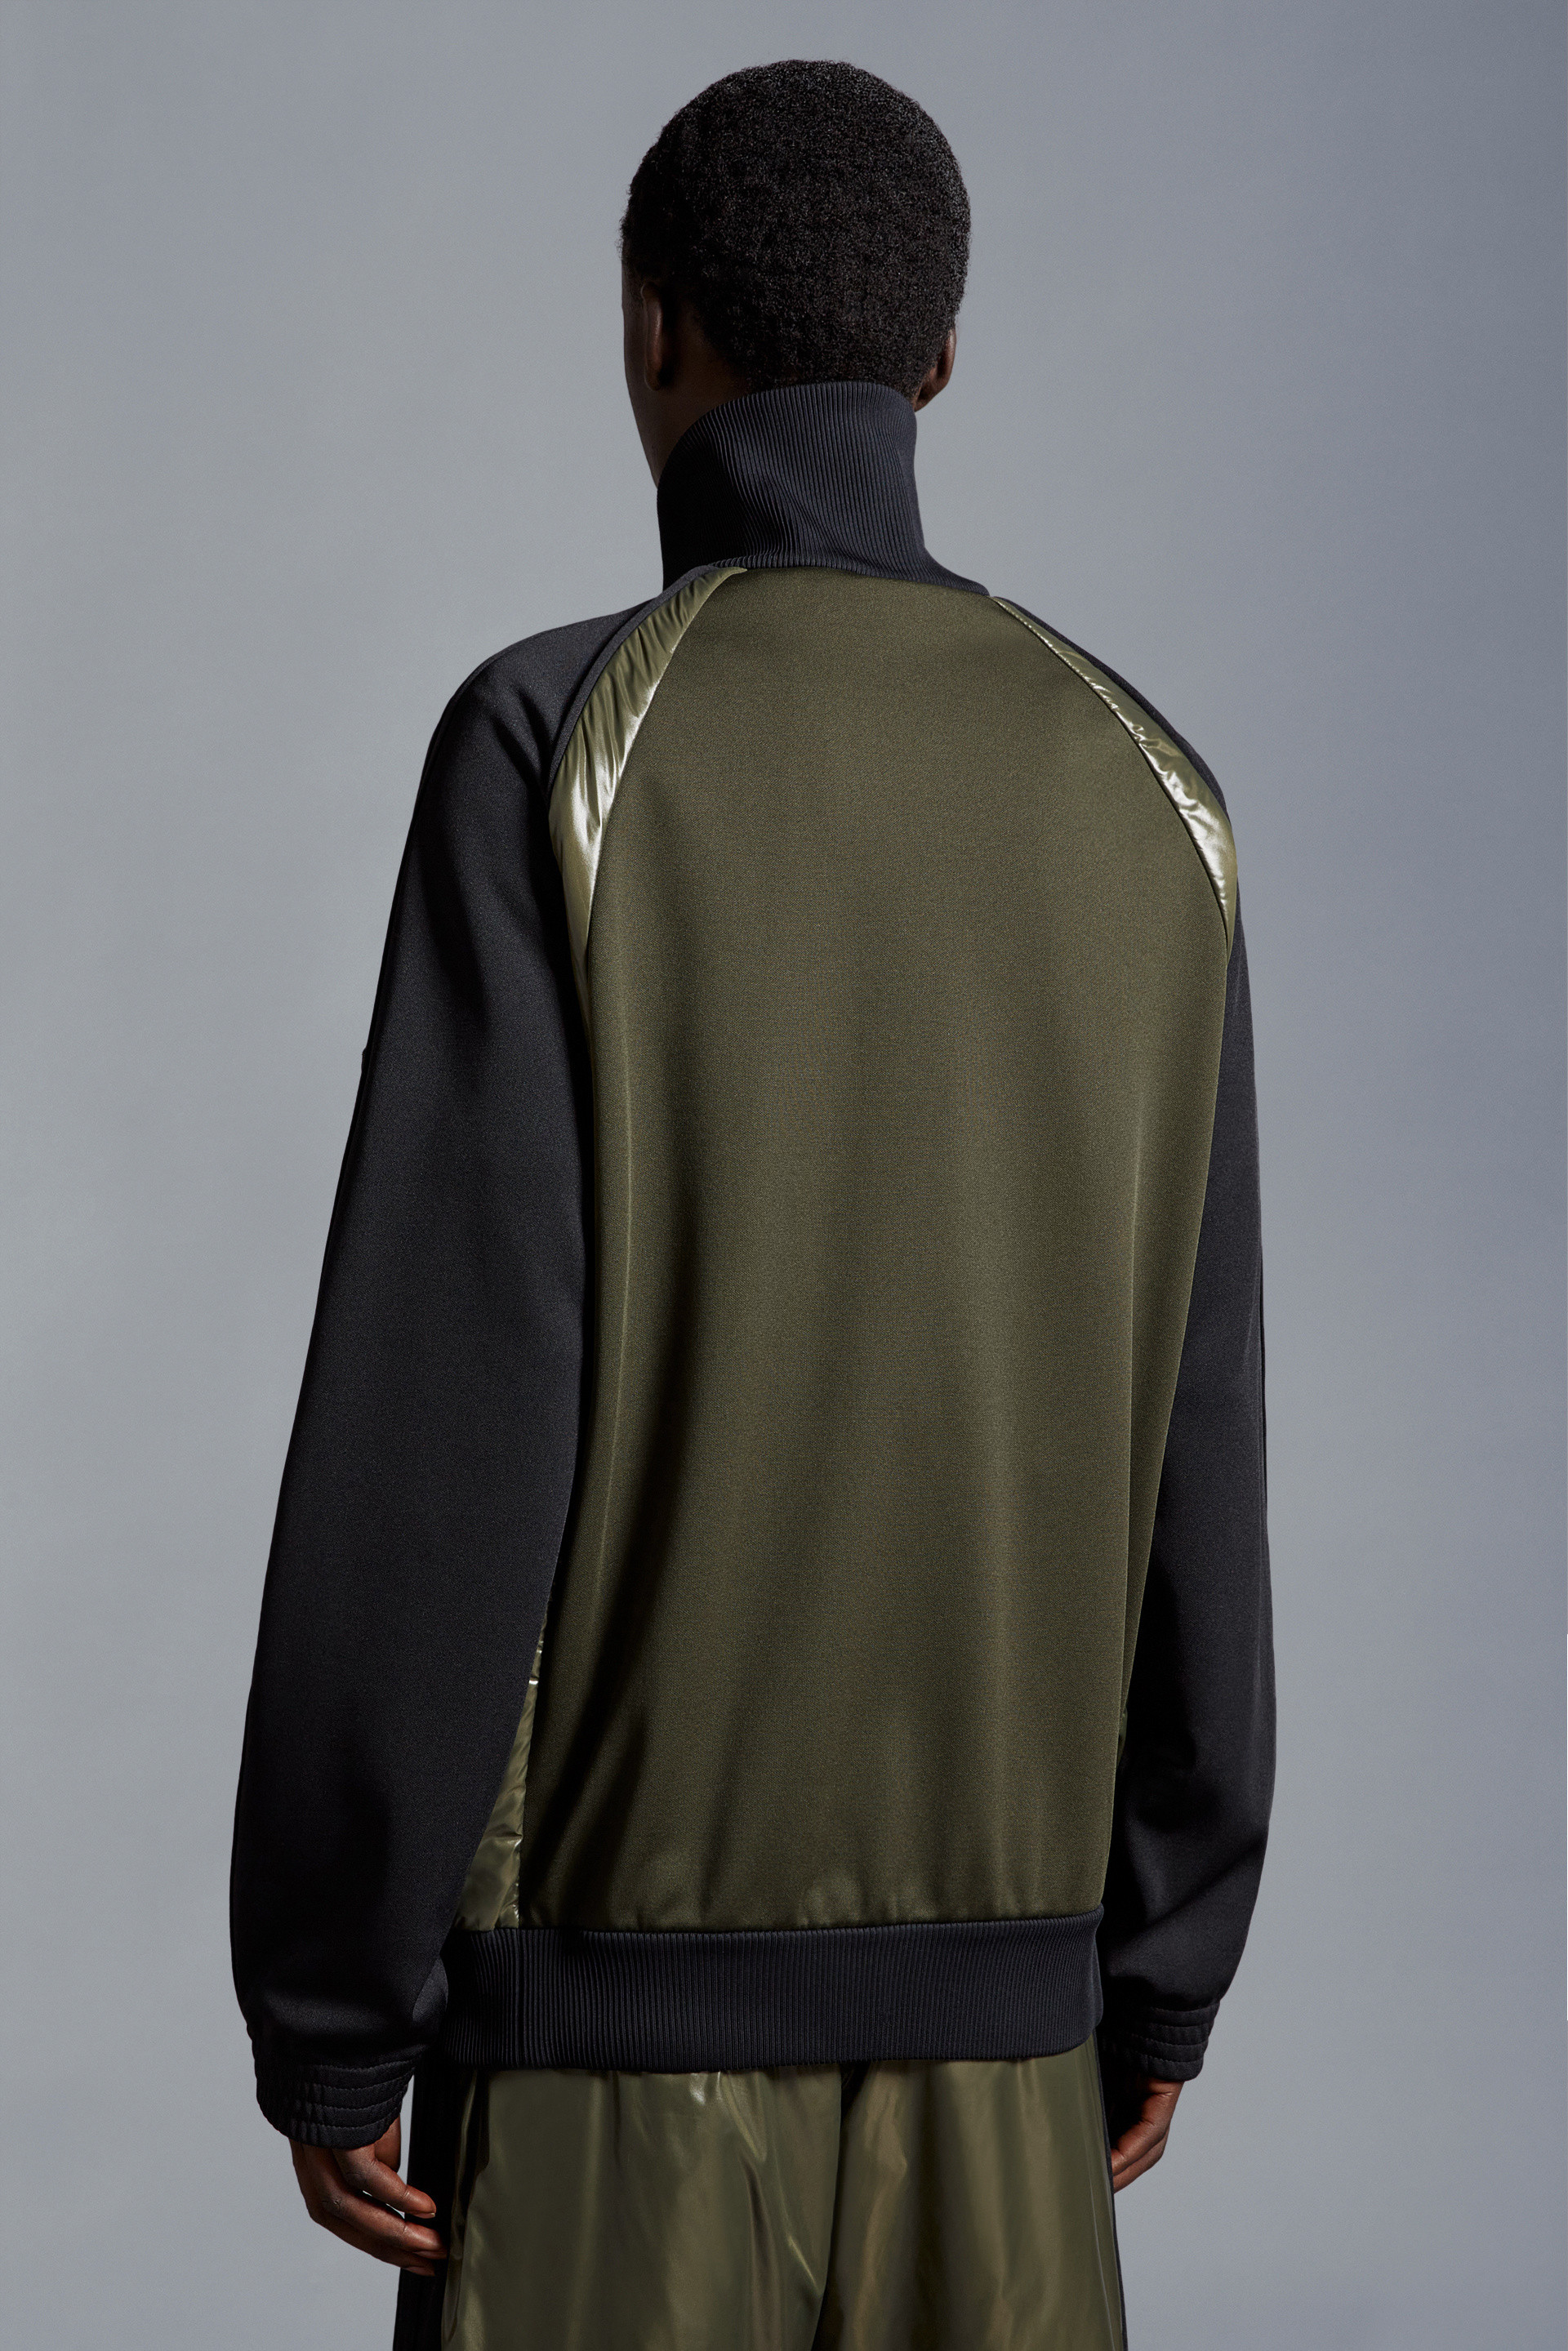 ブラック& グリーン スウェットシャツ : Moncler x adidas Originals 